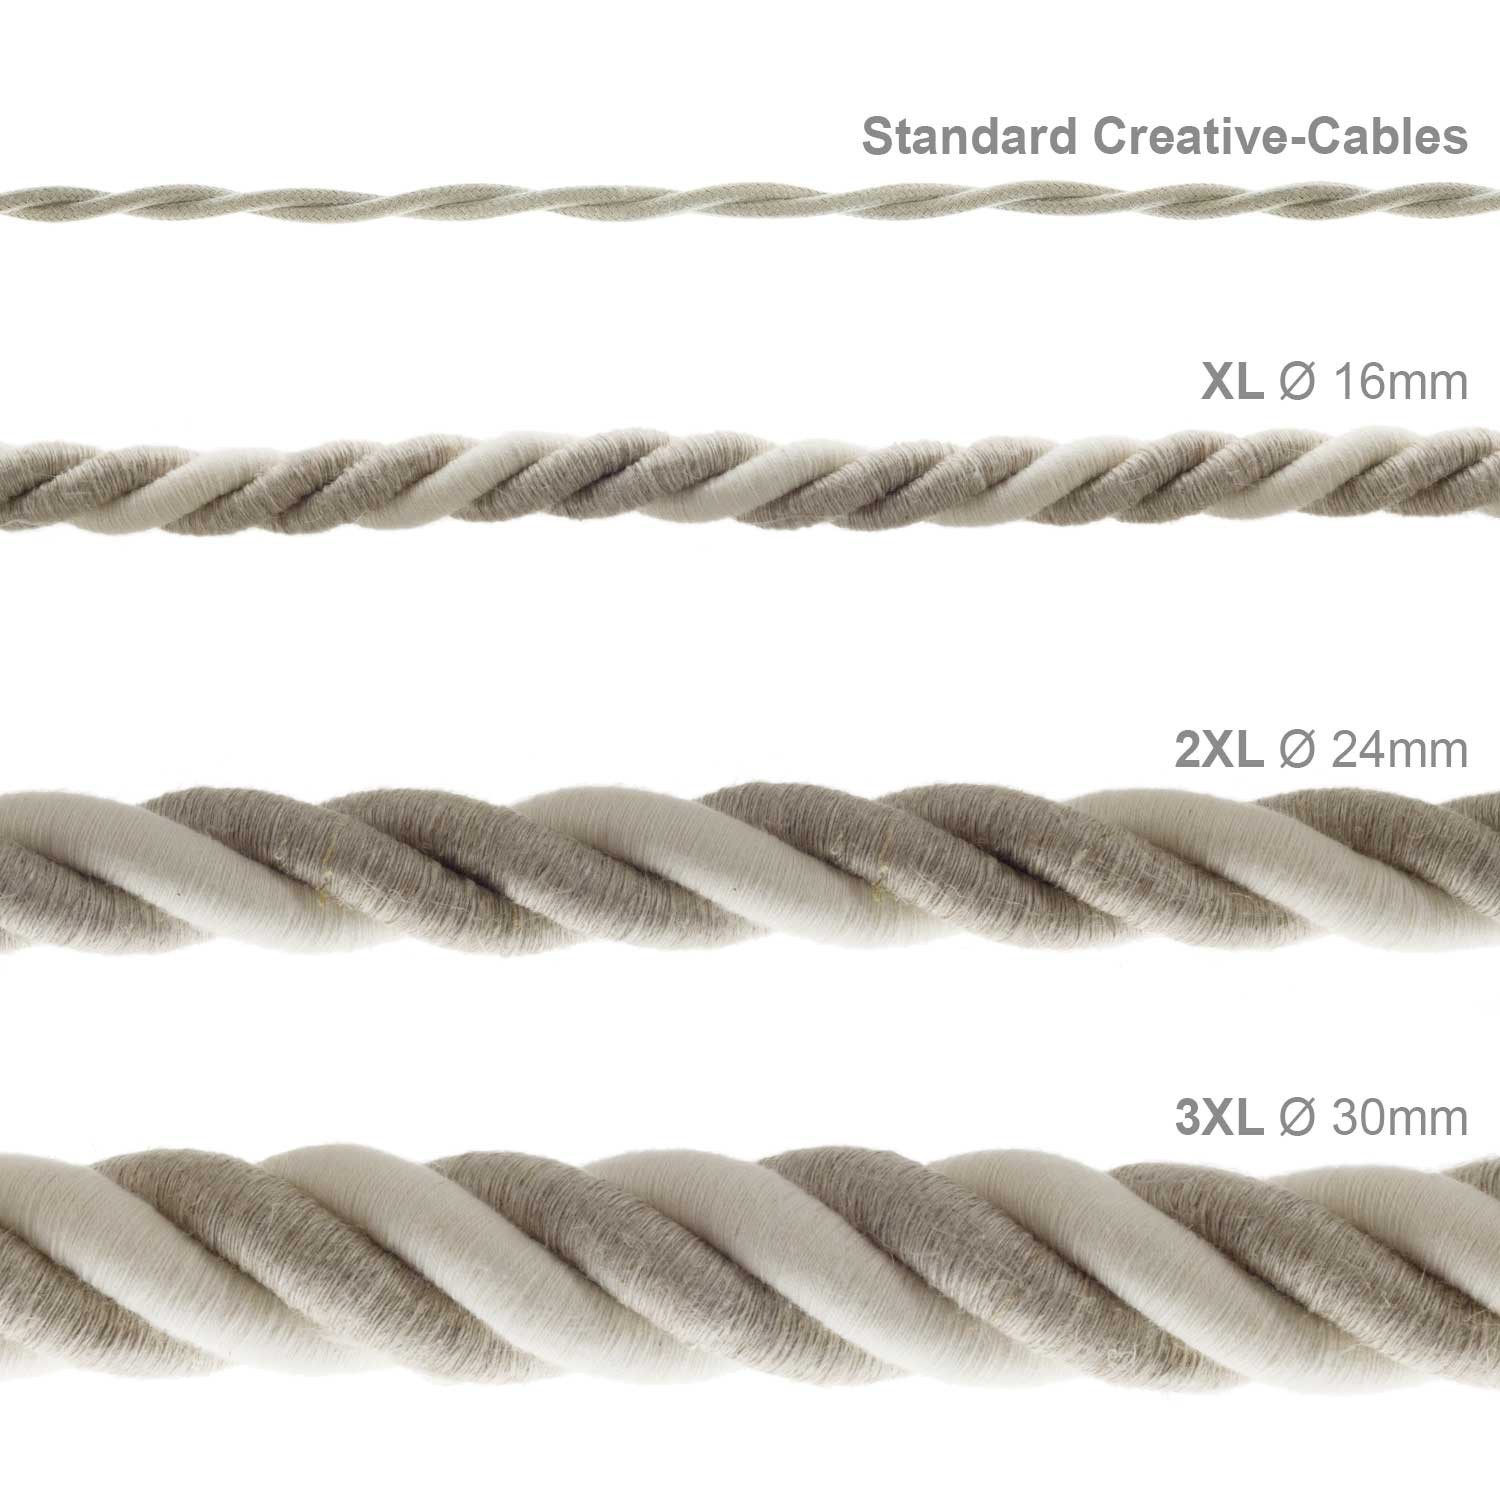 Cordón 3XL, cable eléctrico 3x0,75, recubierto en lino natural y algodón en bruto. Diámetro: 30mm.